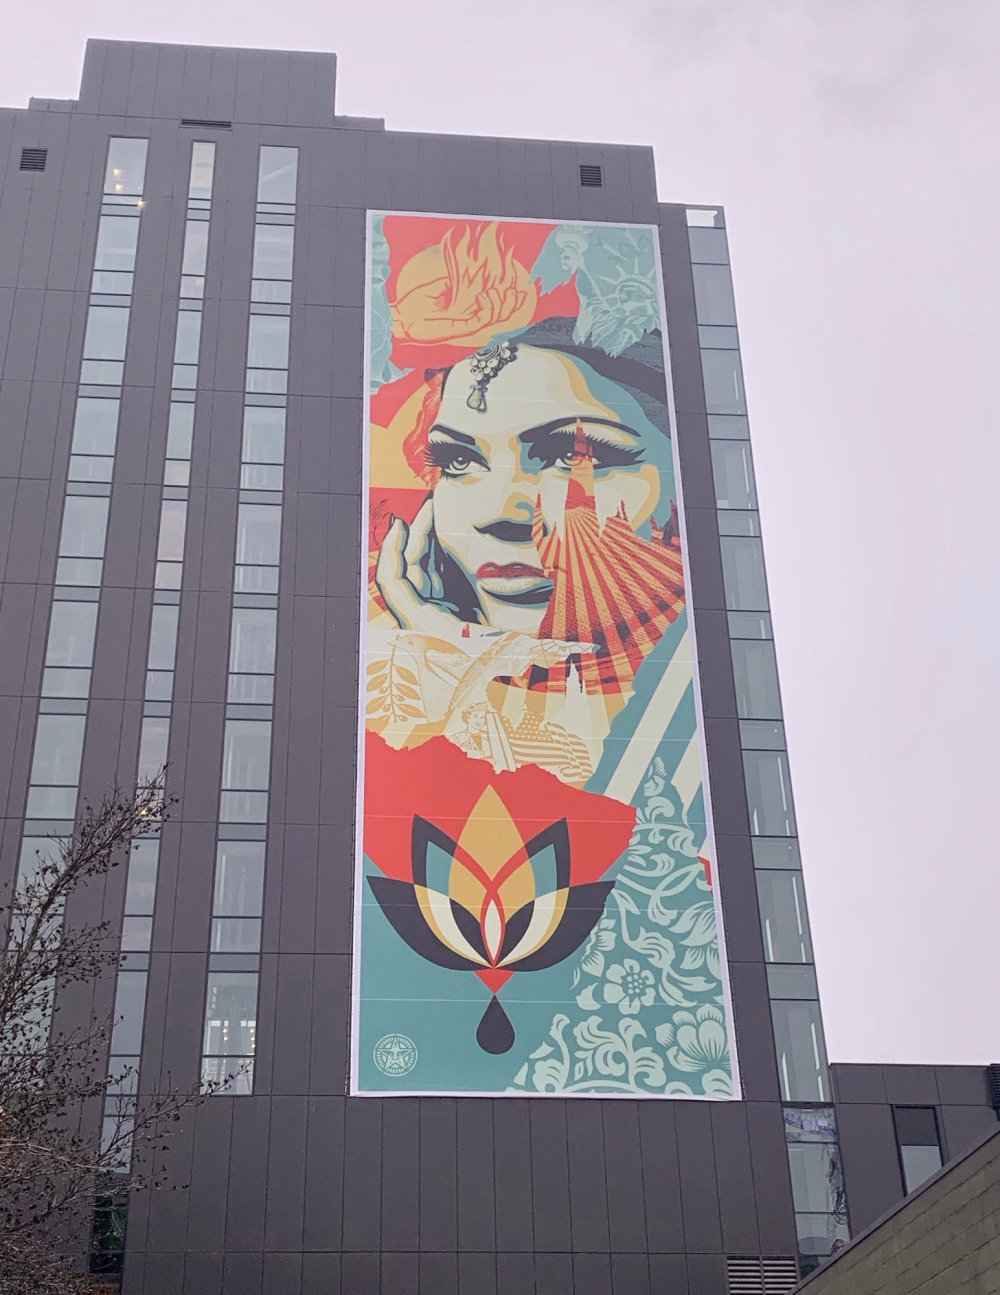 mural in Seattle by artist Shepard Fairey.